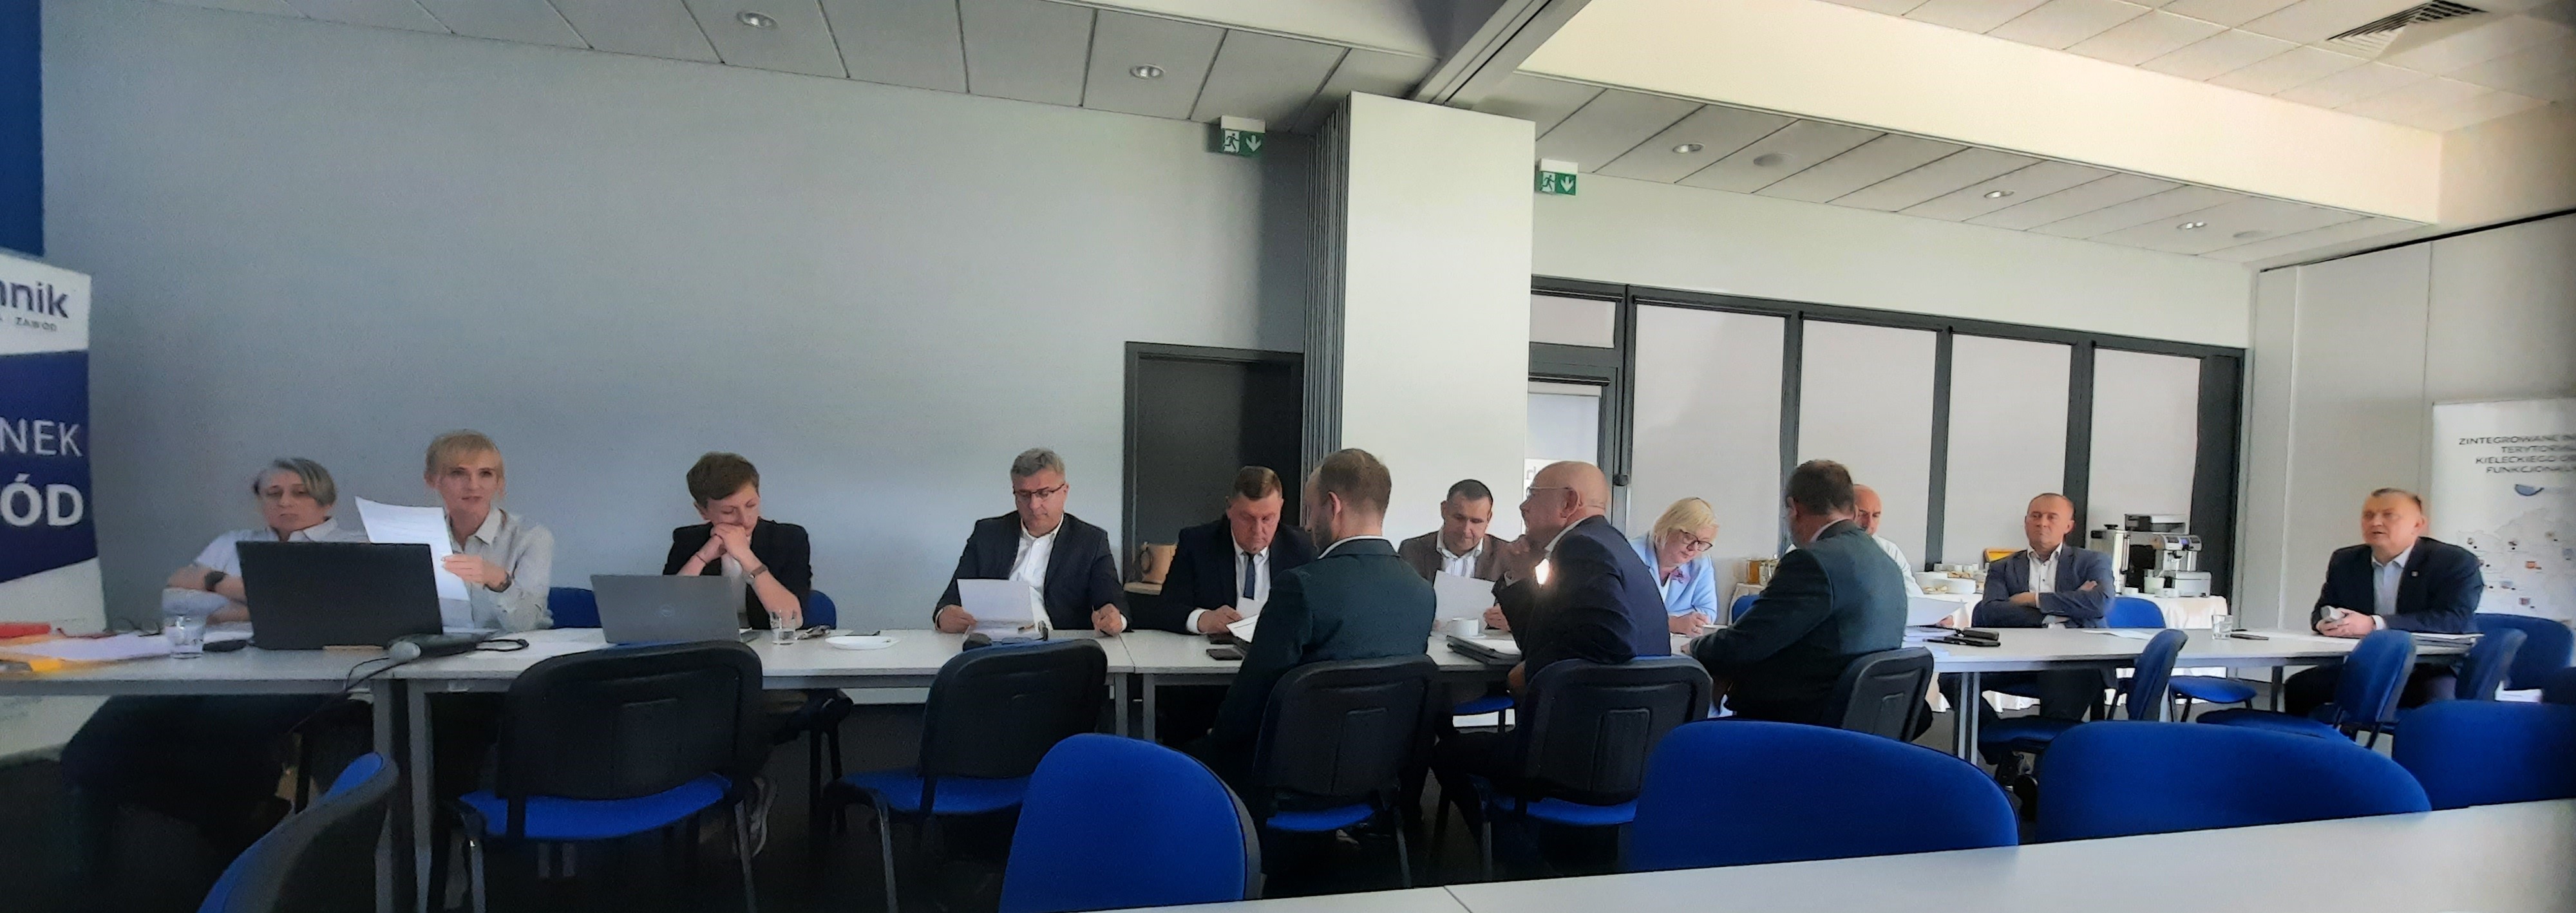 Posiedzenie Komitetu Sterującego Kieleckiego Obszaru Funkcjonalnego